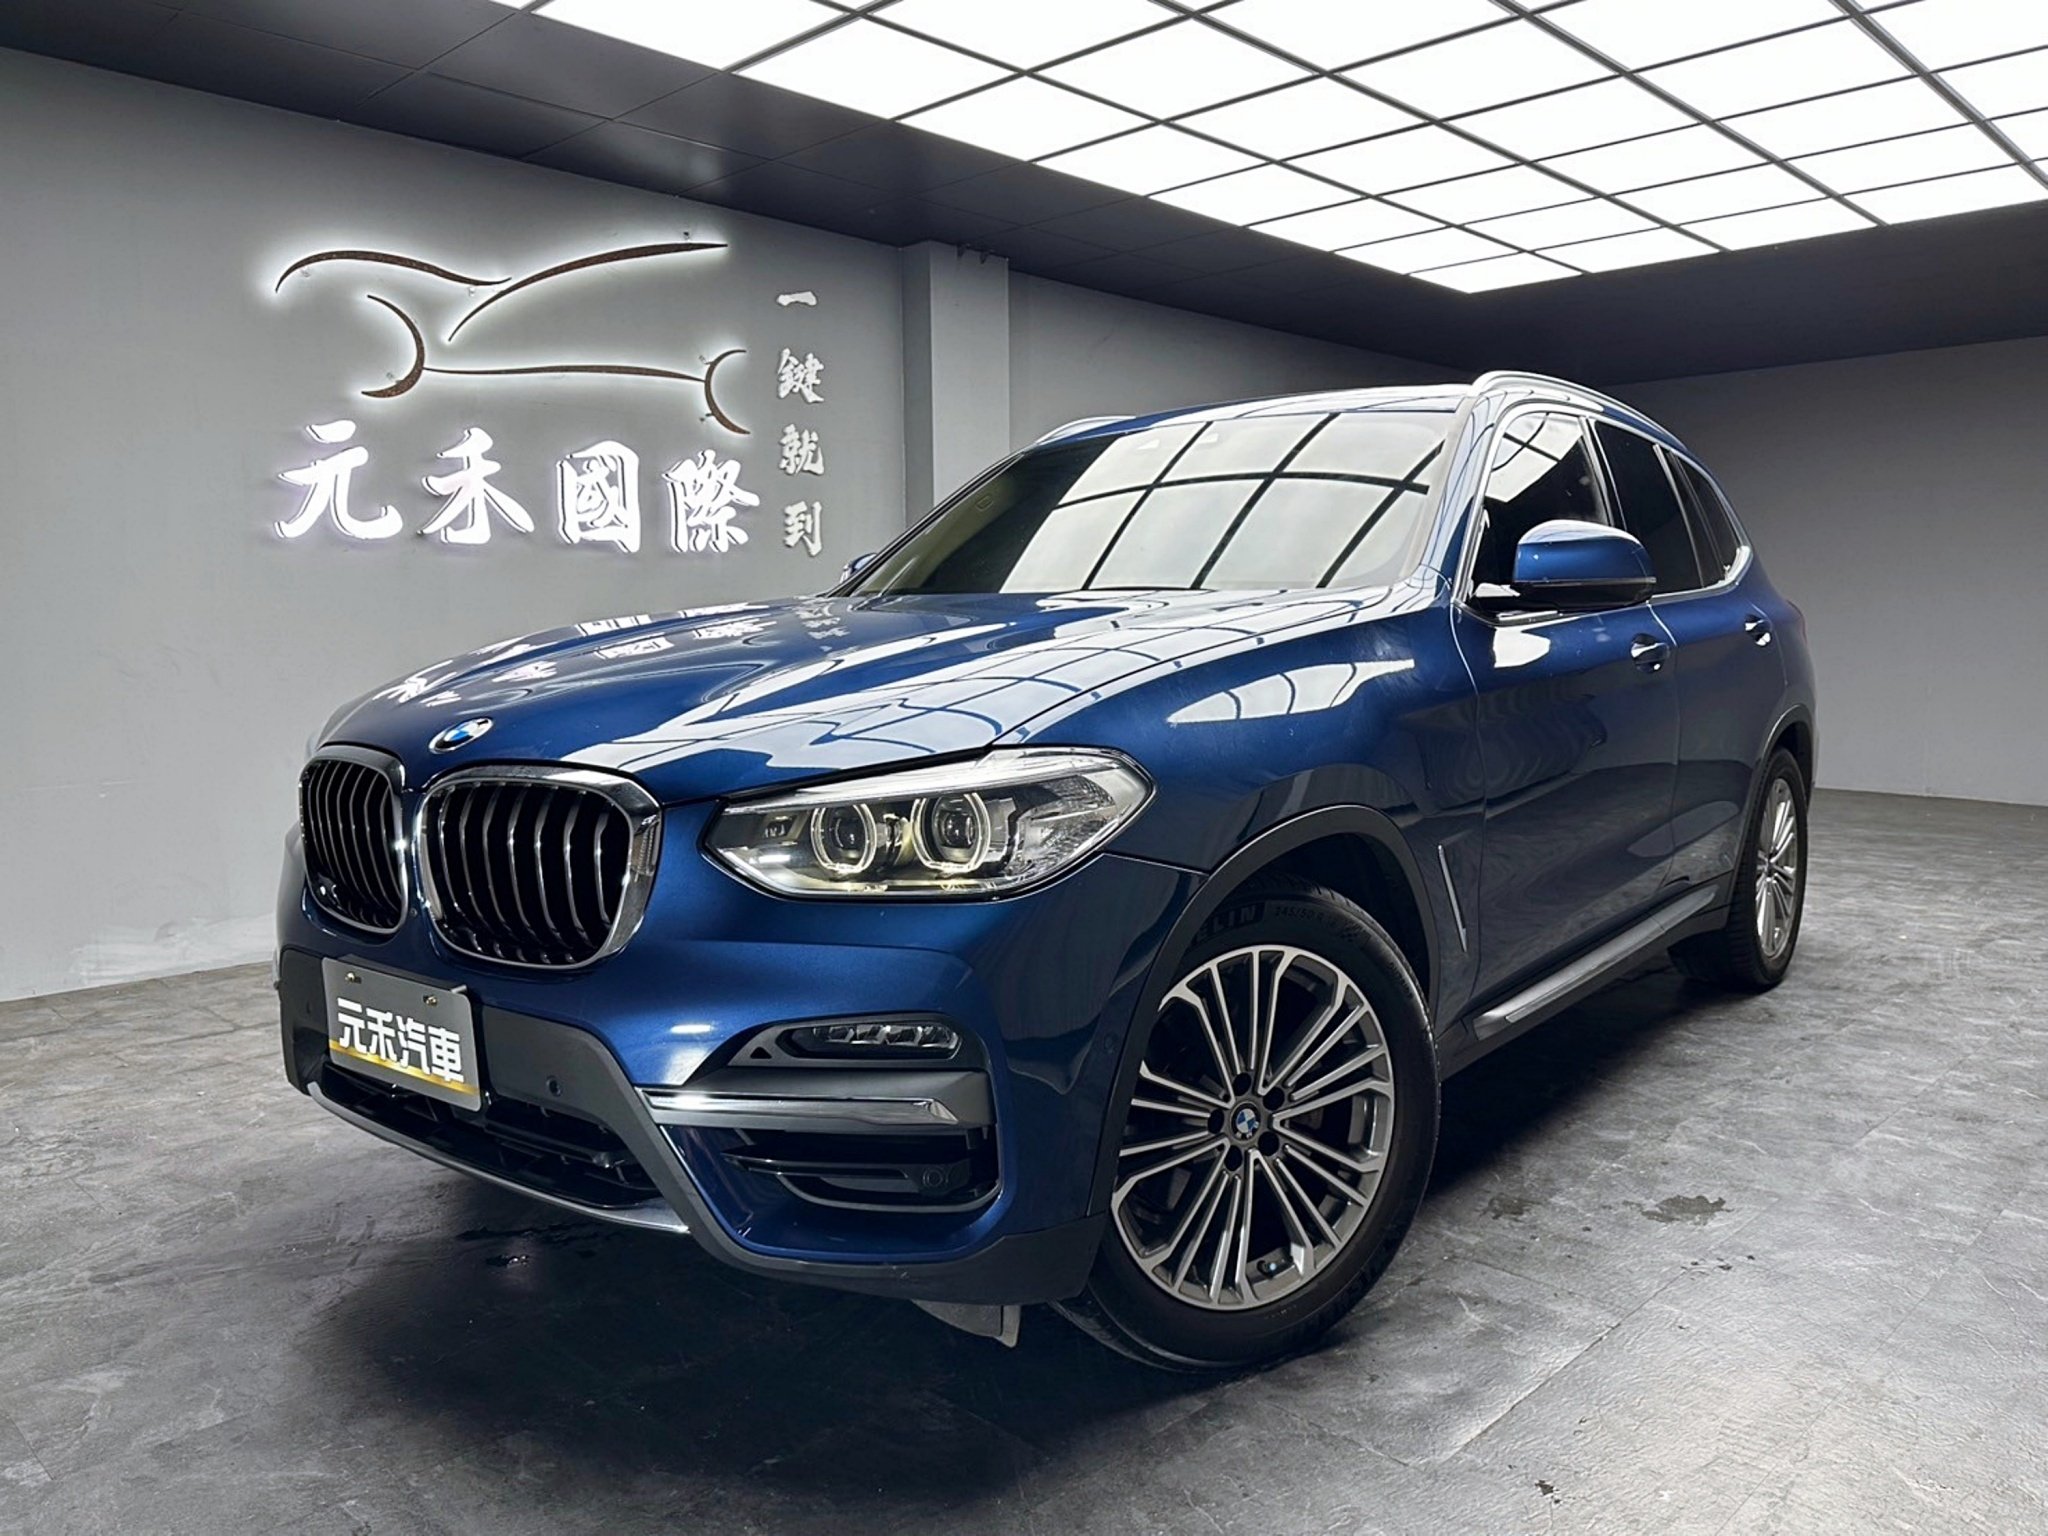 2019 BMW 寶馬 X3